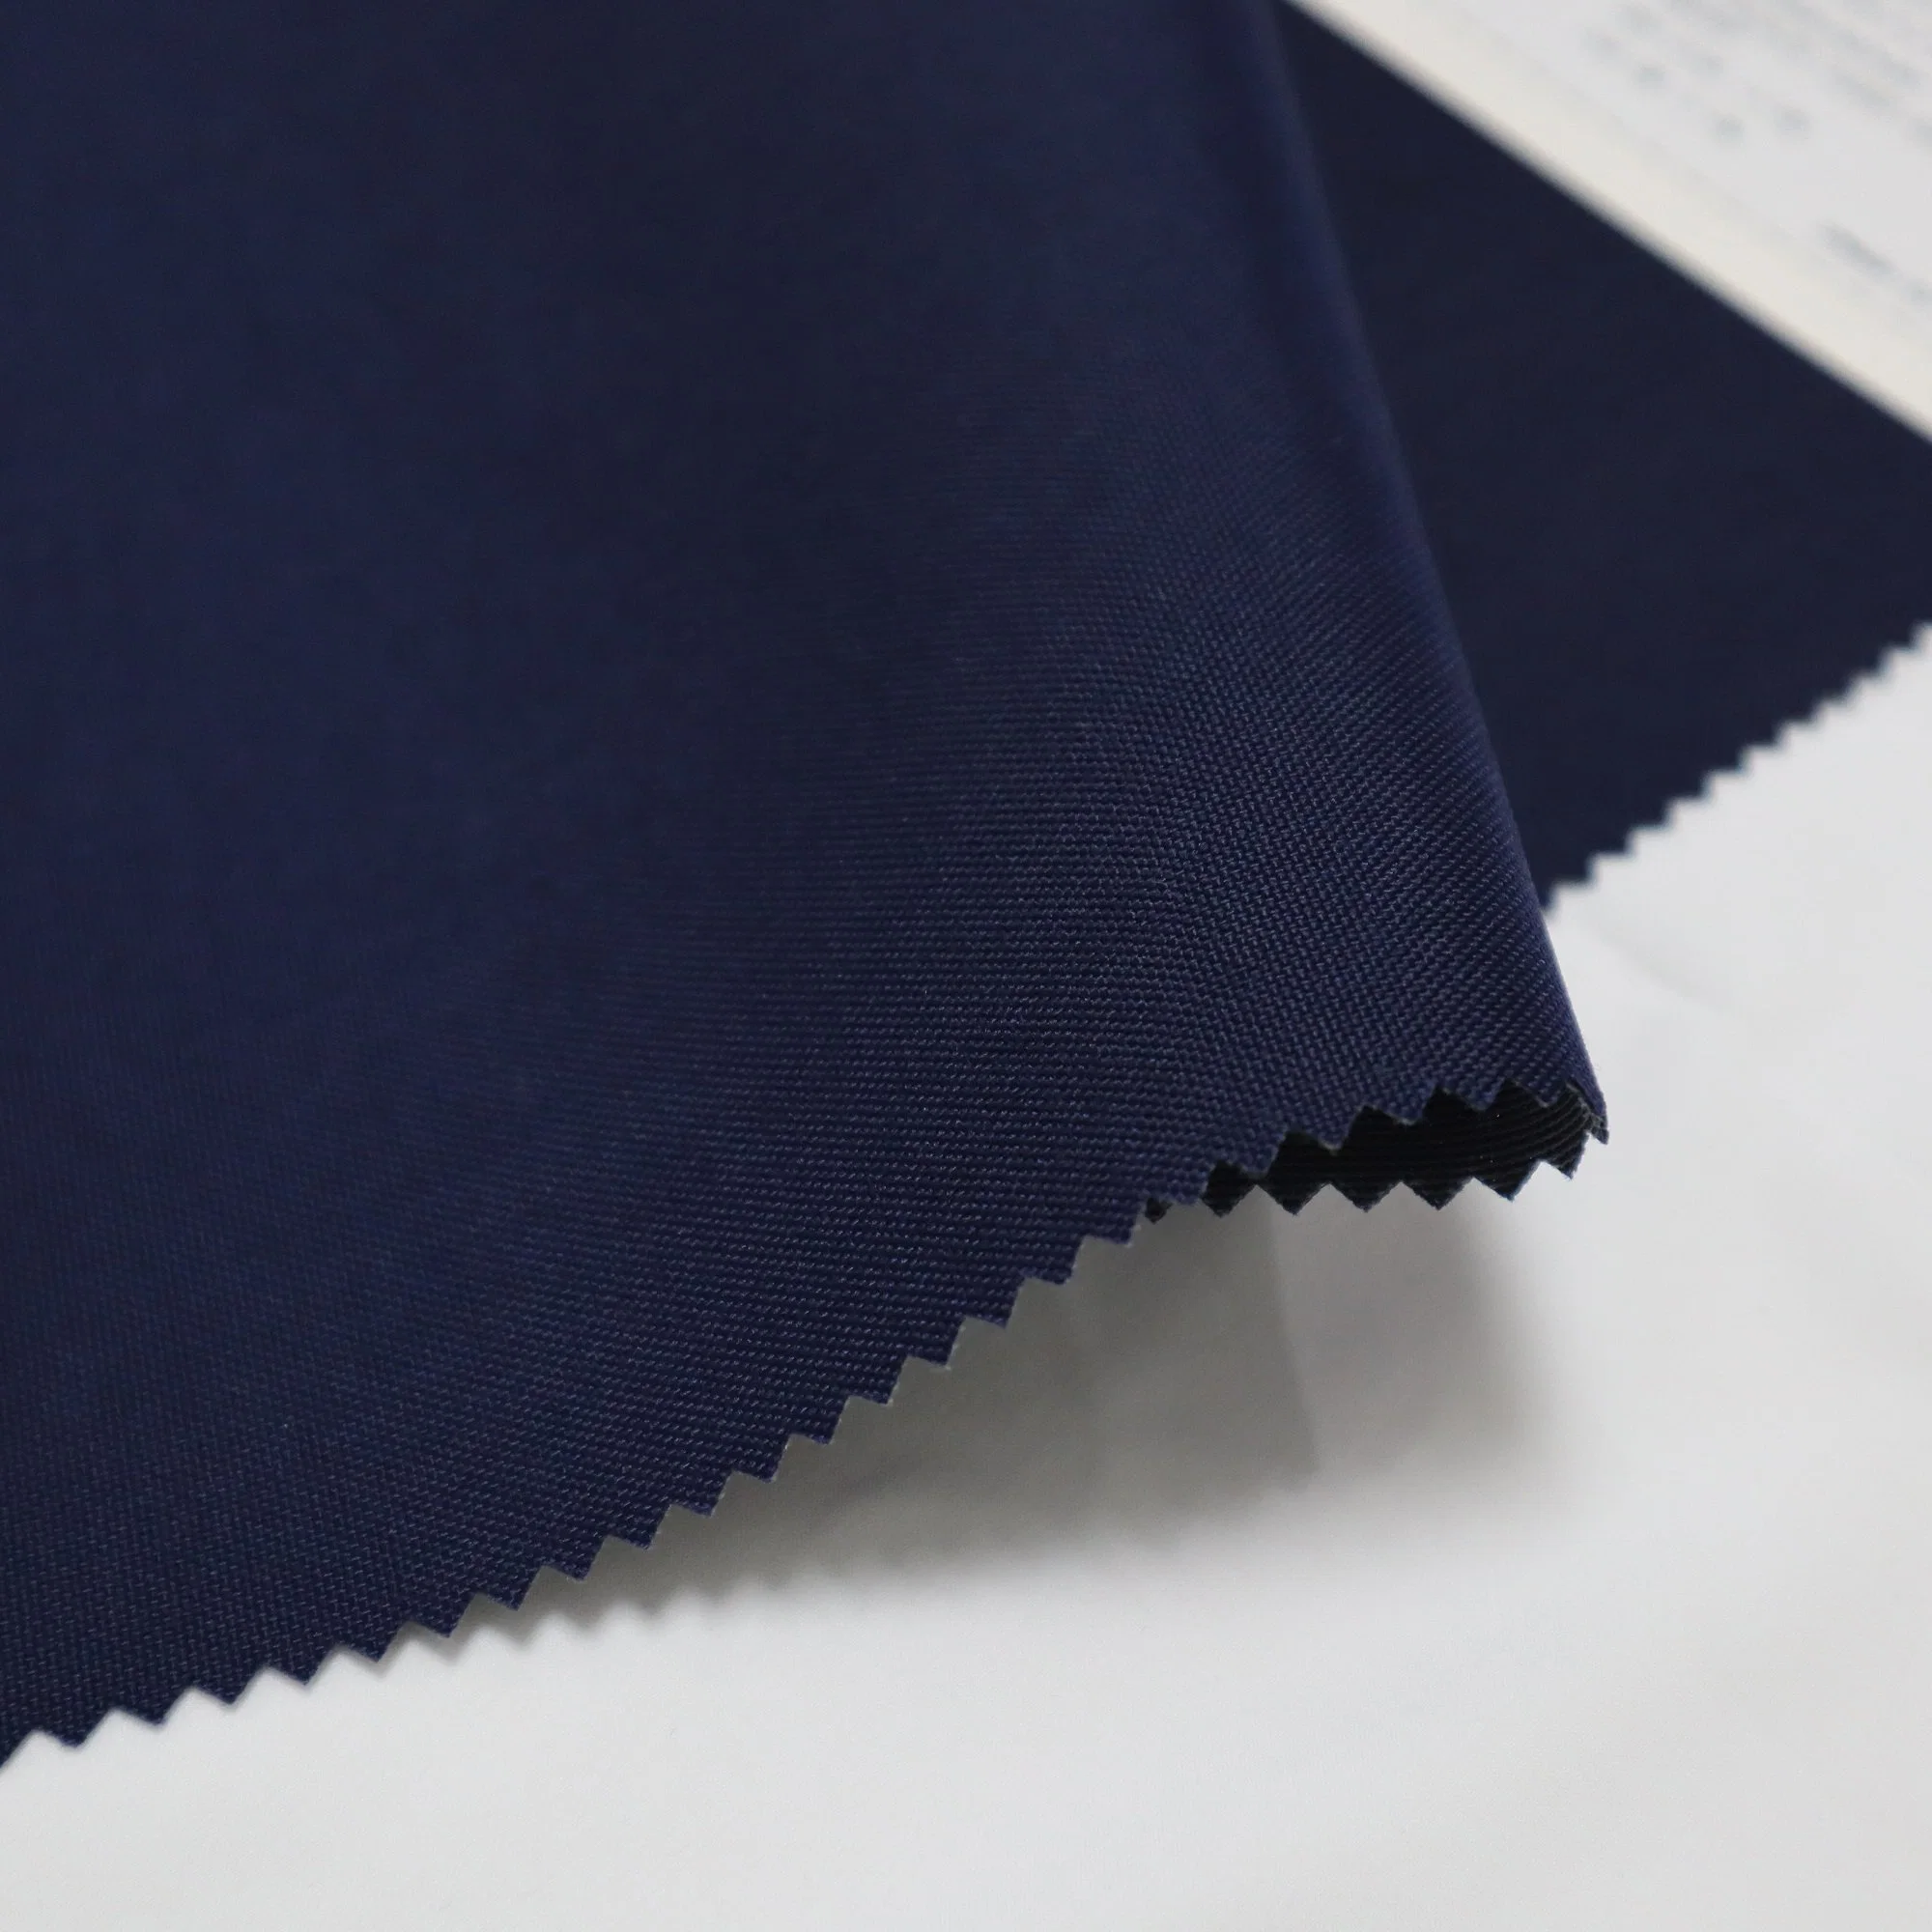 500D 100% Nylon 6,6 Br Cordura Wasserdicht PU klar beschichtet Polyester Tricot strapazierfähiges Gewebe für Wrokwear Taschen